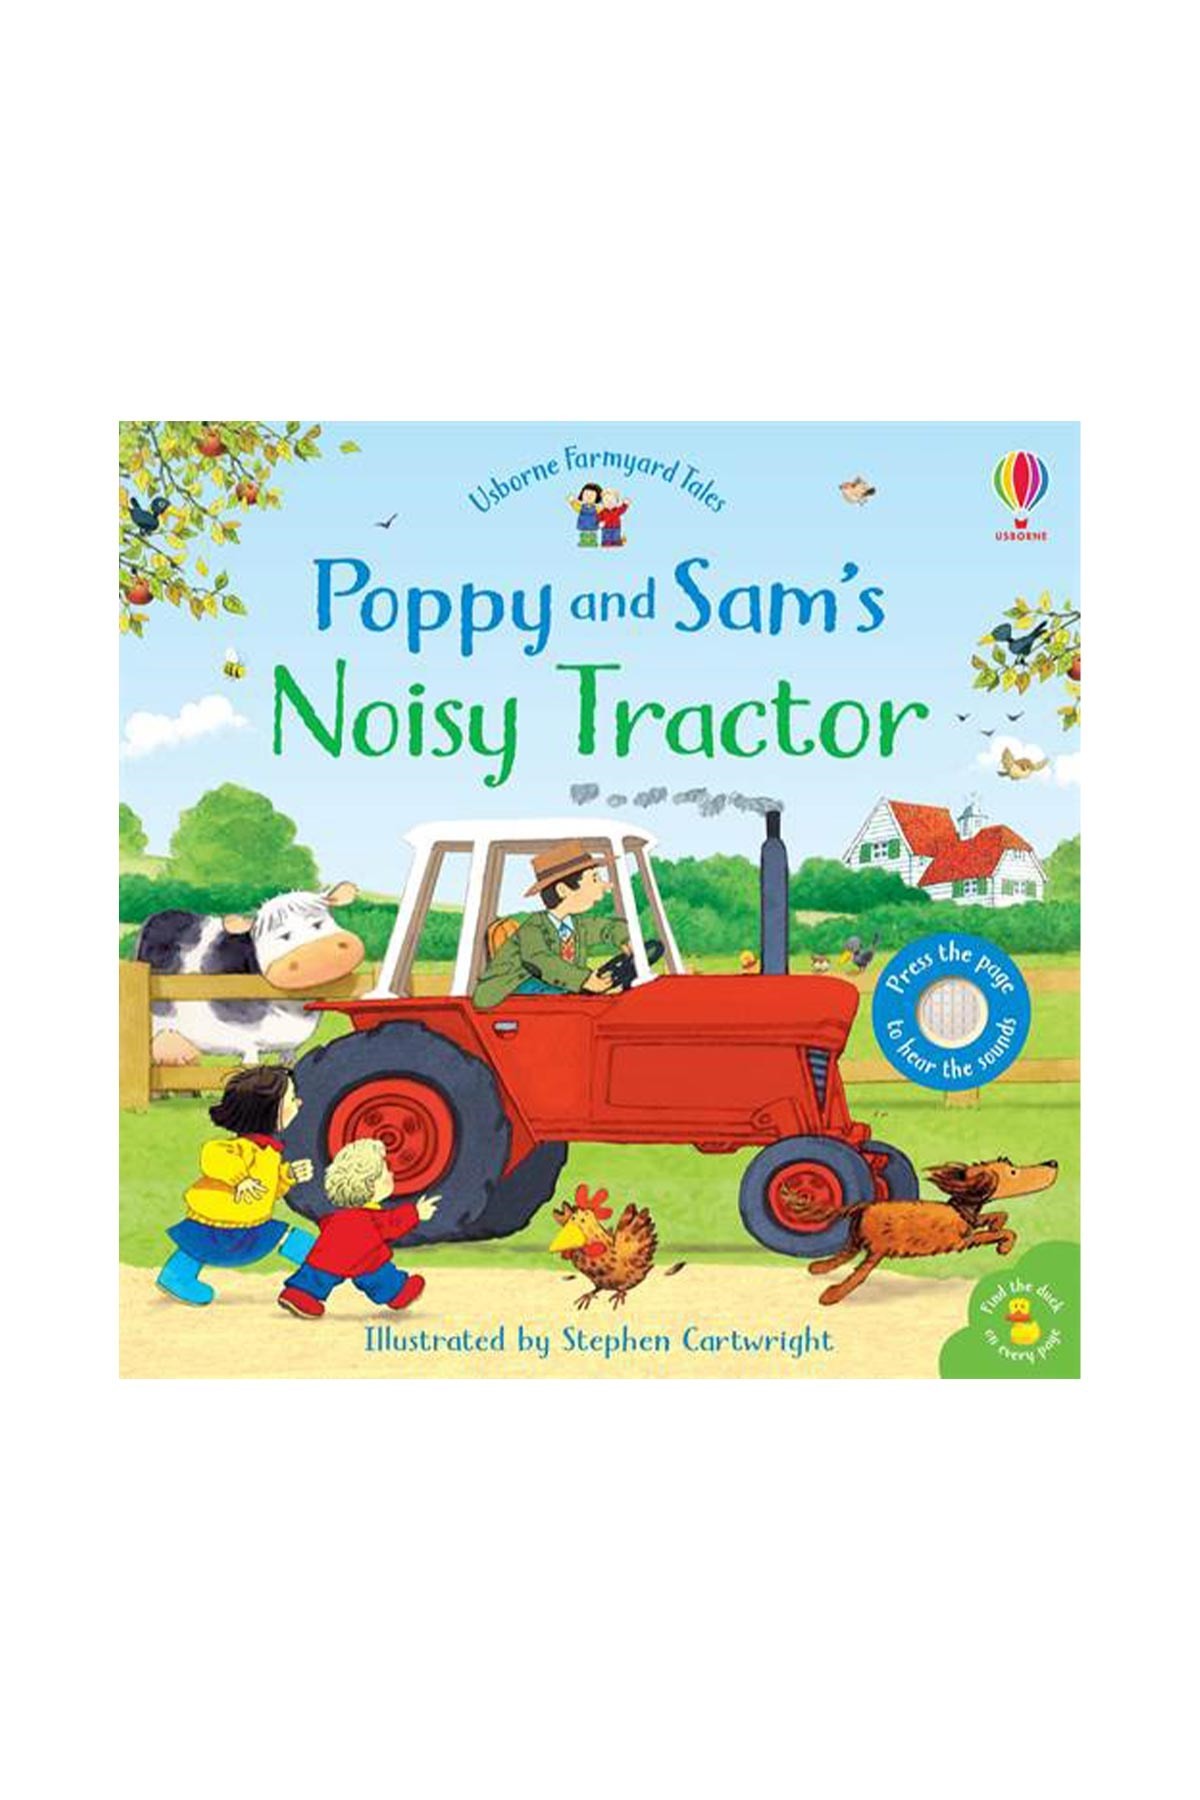 The Usborne Poppy and Sam's Noisy Tractor